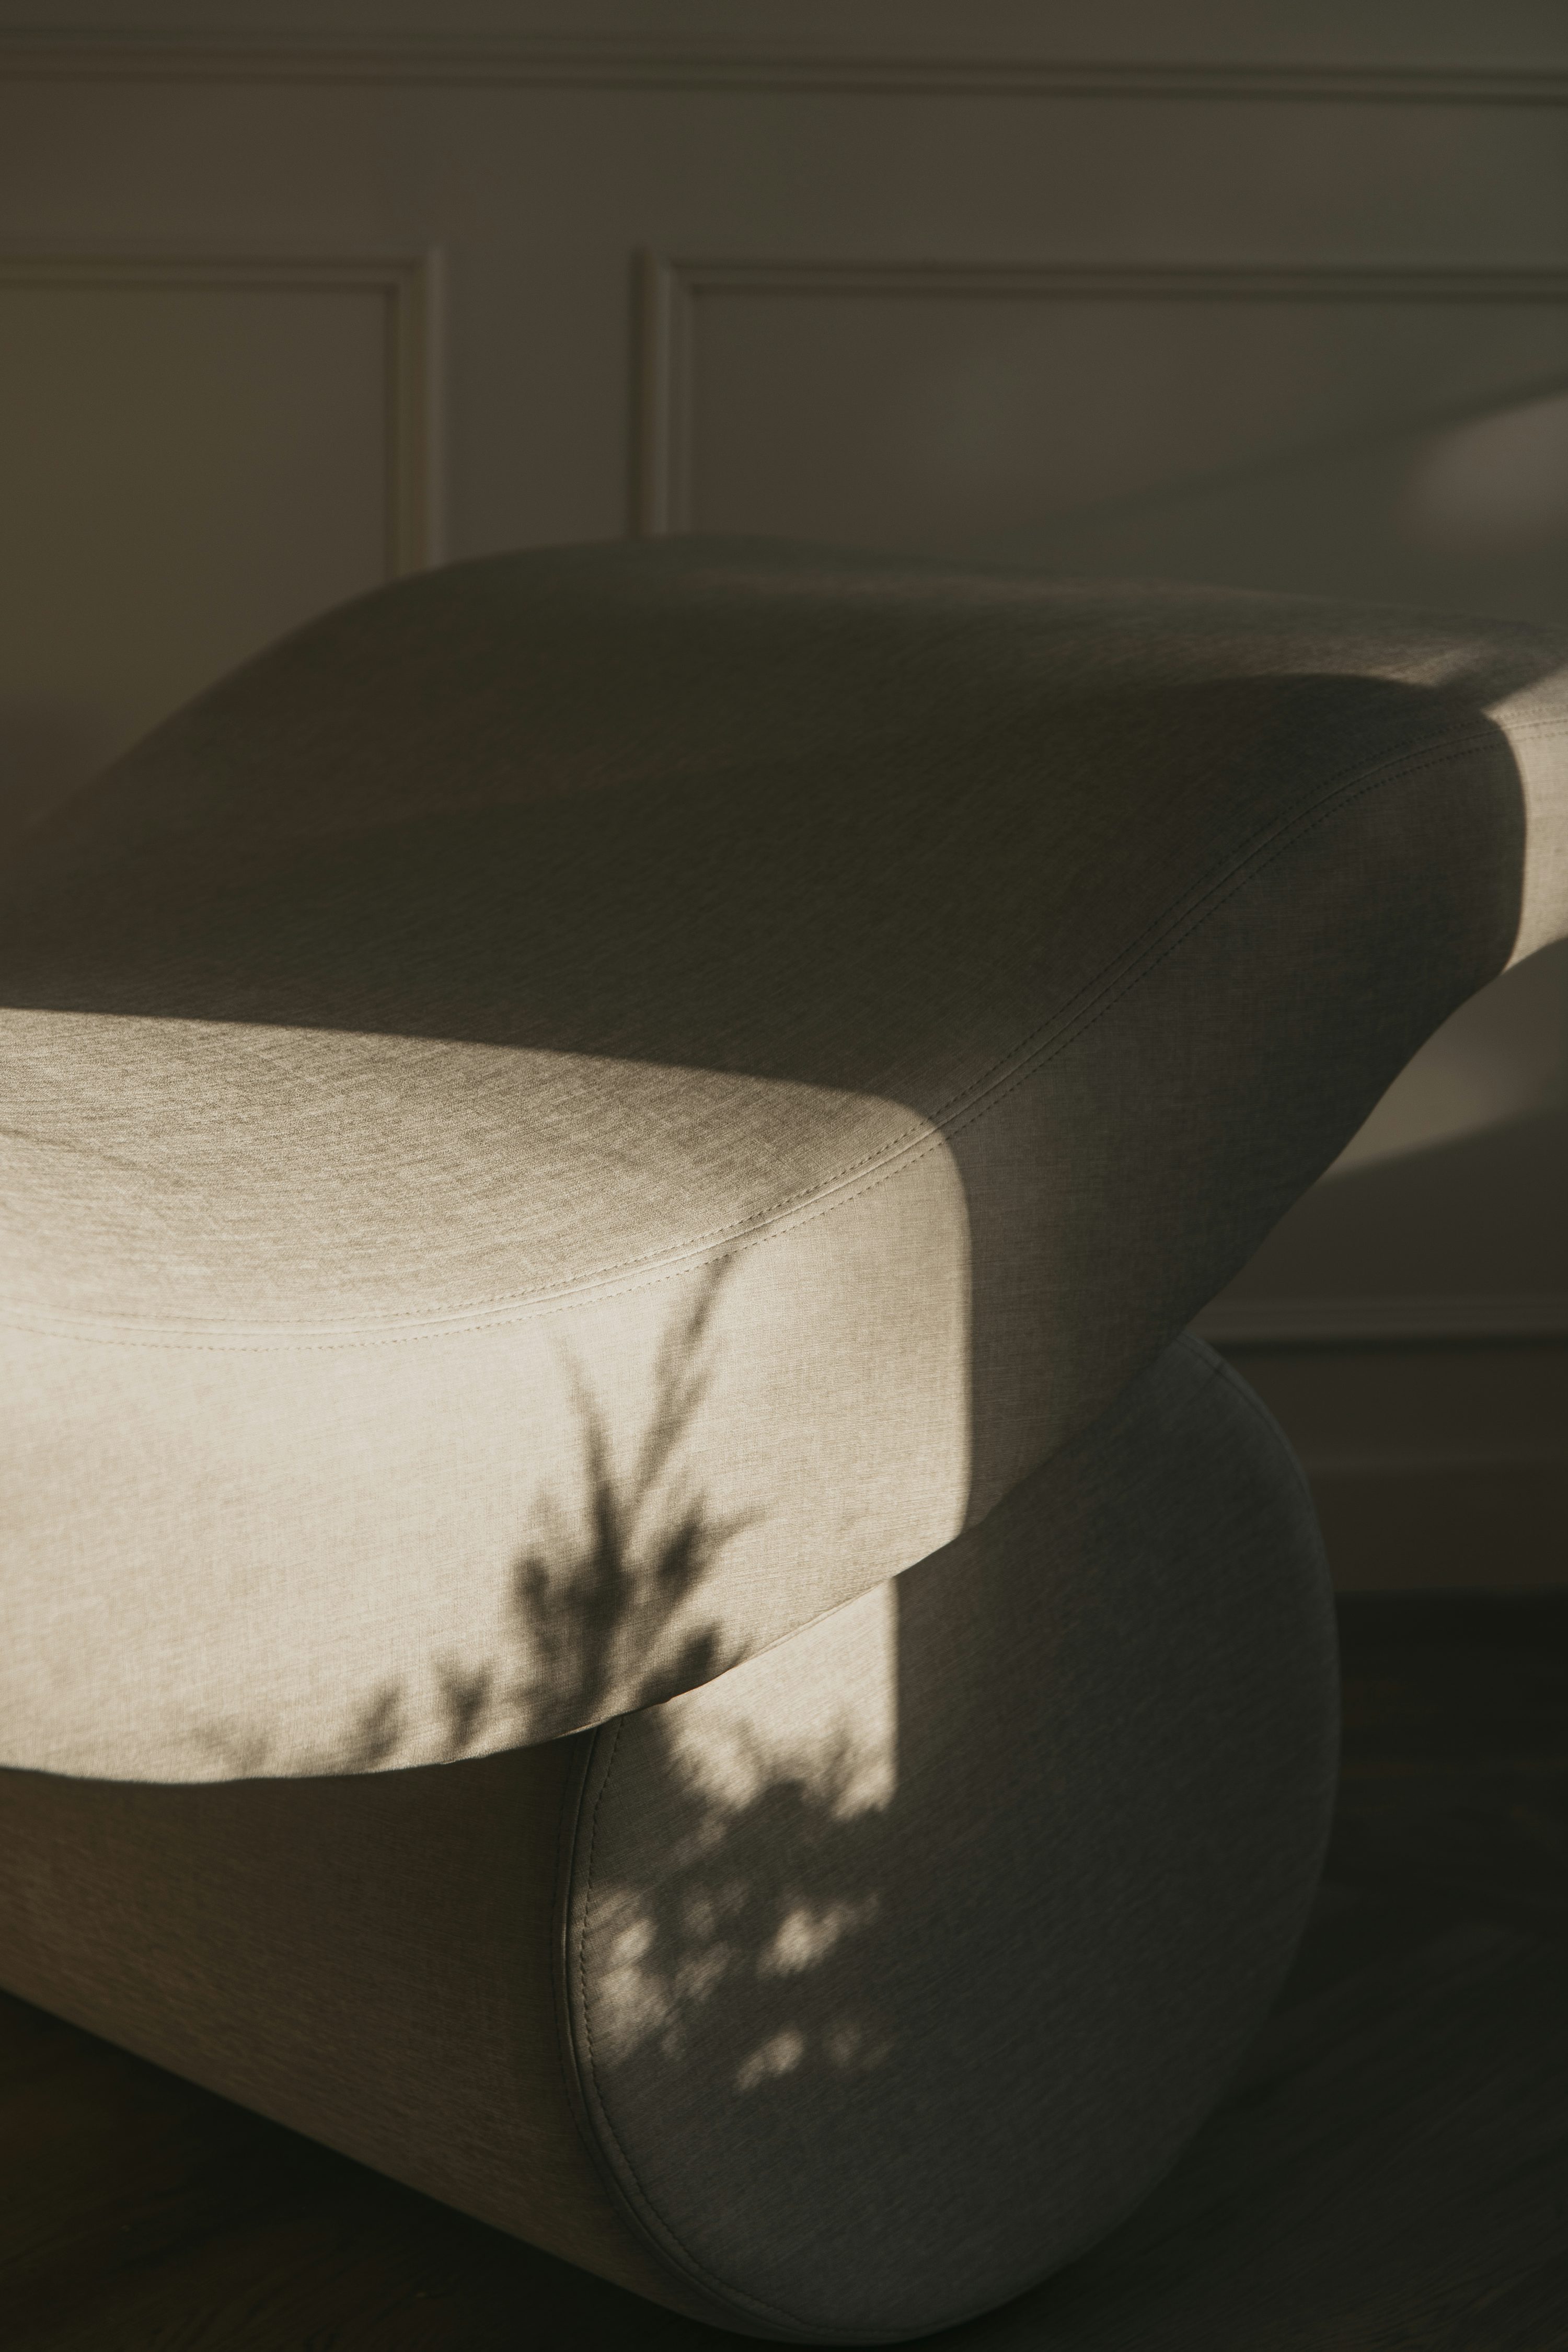 a sombra de uma planta no encosto de uma cadeira